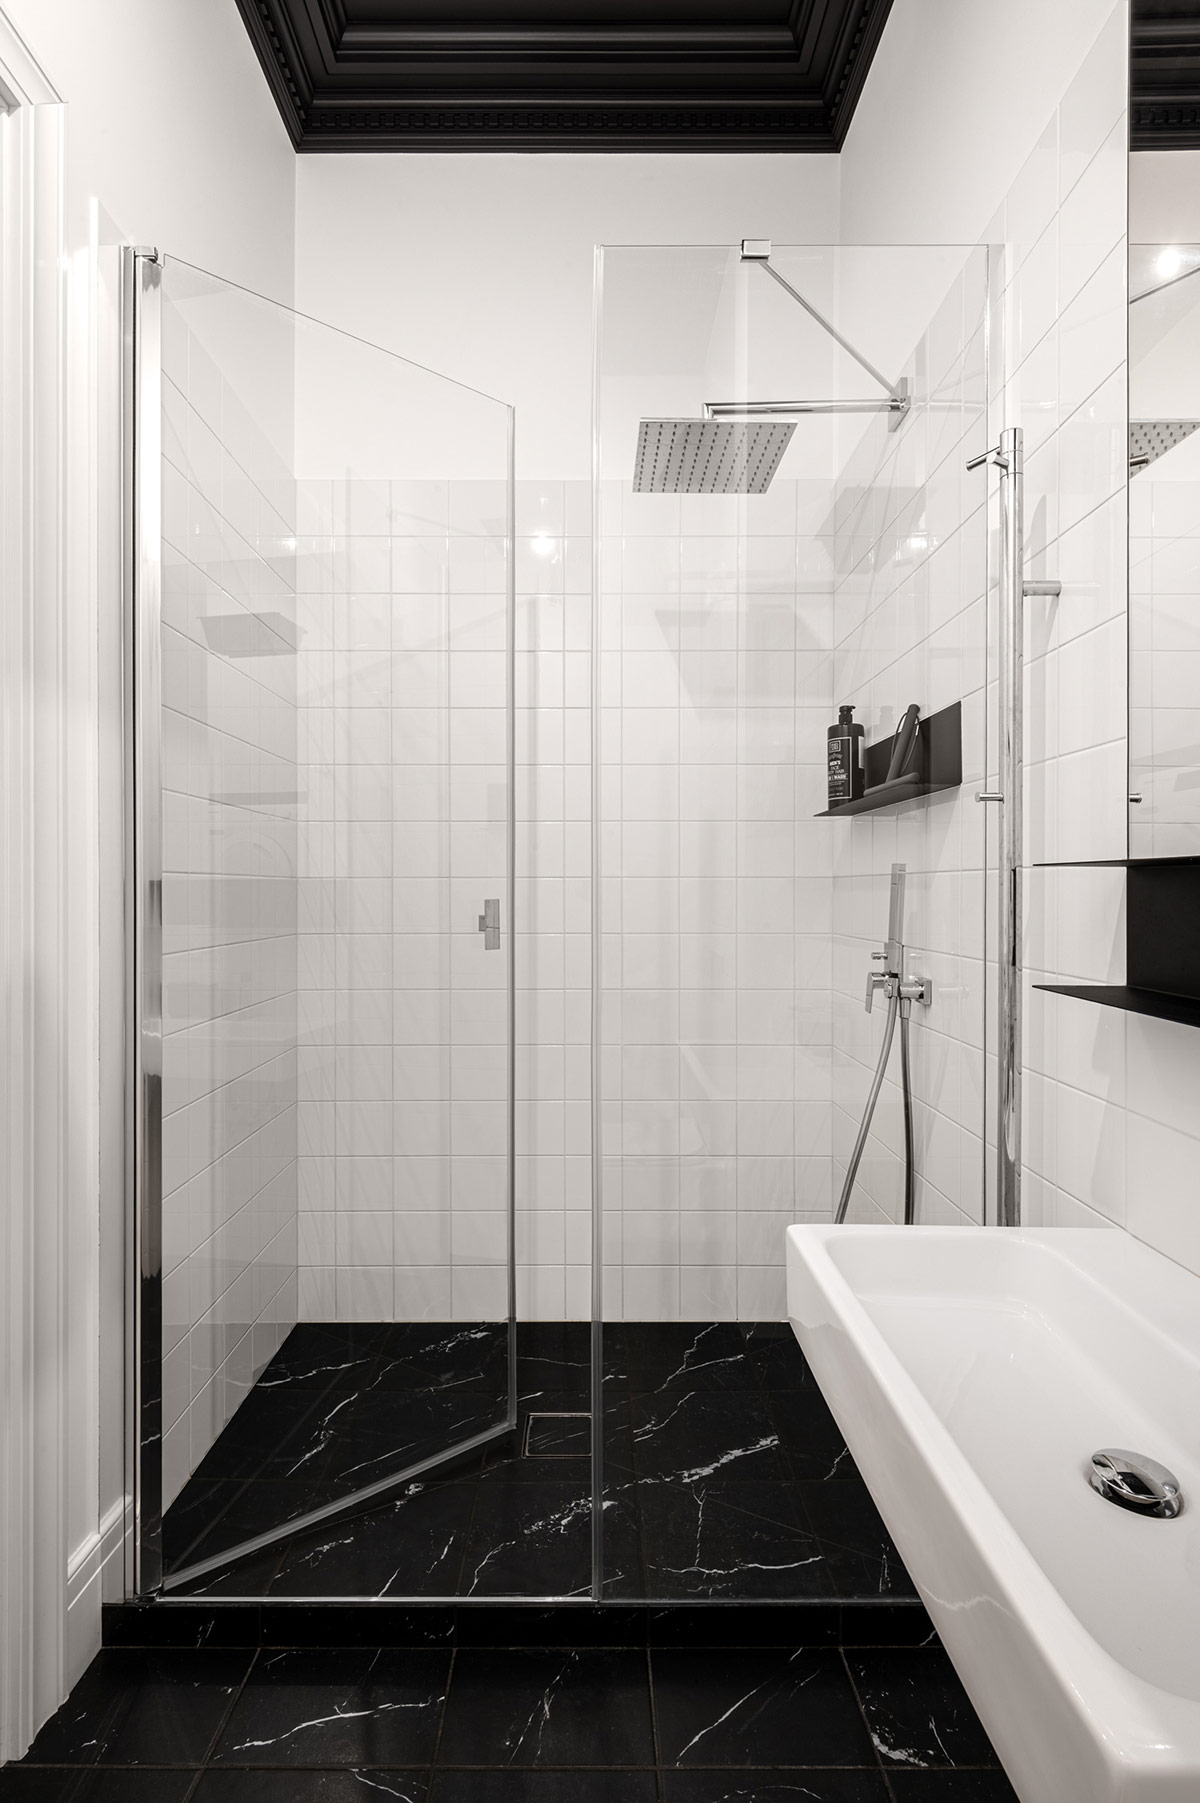 Gạch đá cẩm thạch đen giúp kết nối chặt chẽ các khu vực chức năng trong phòng tắm căn hộ tối giản này.